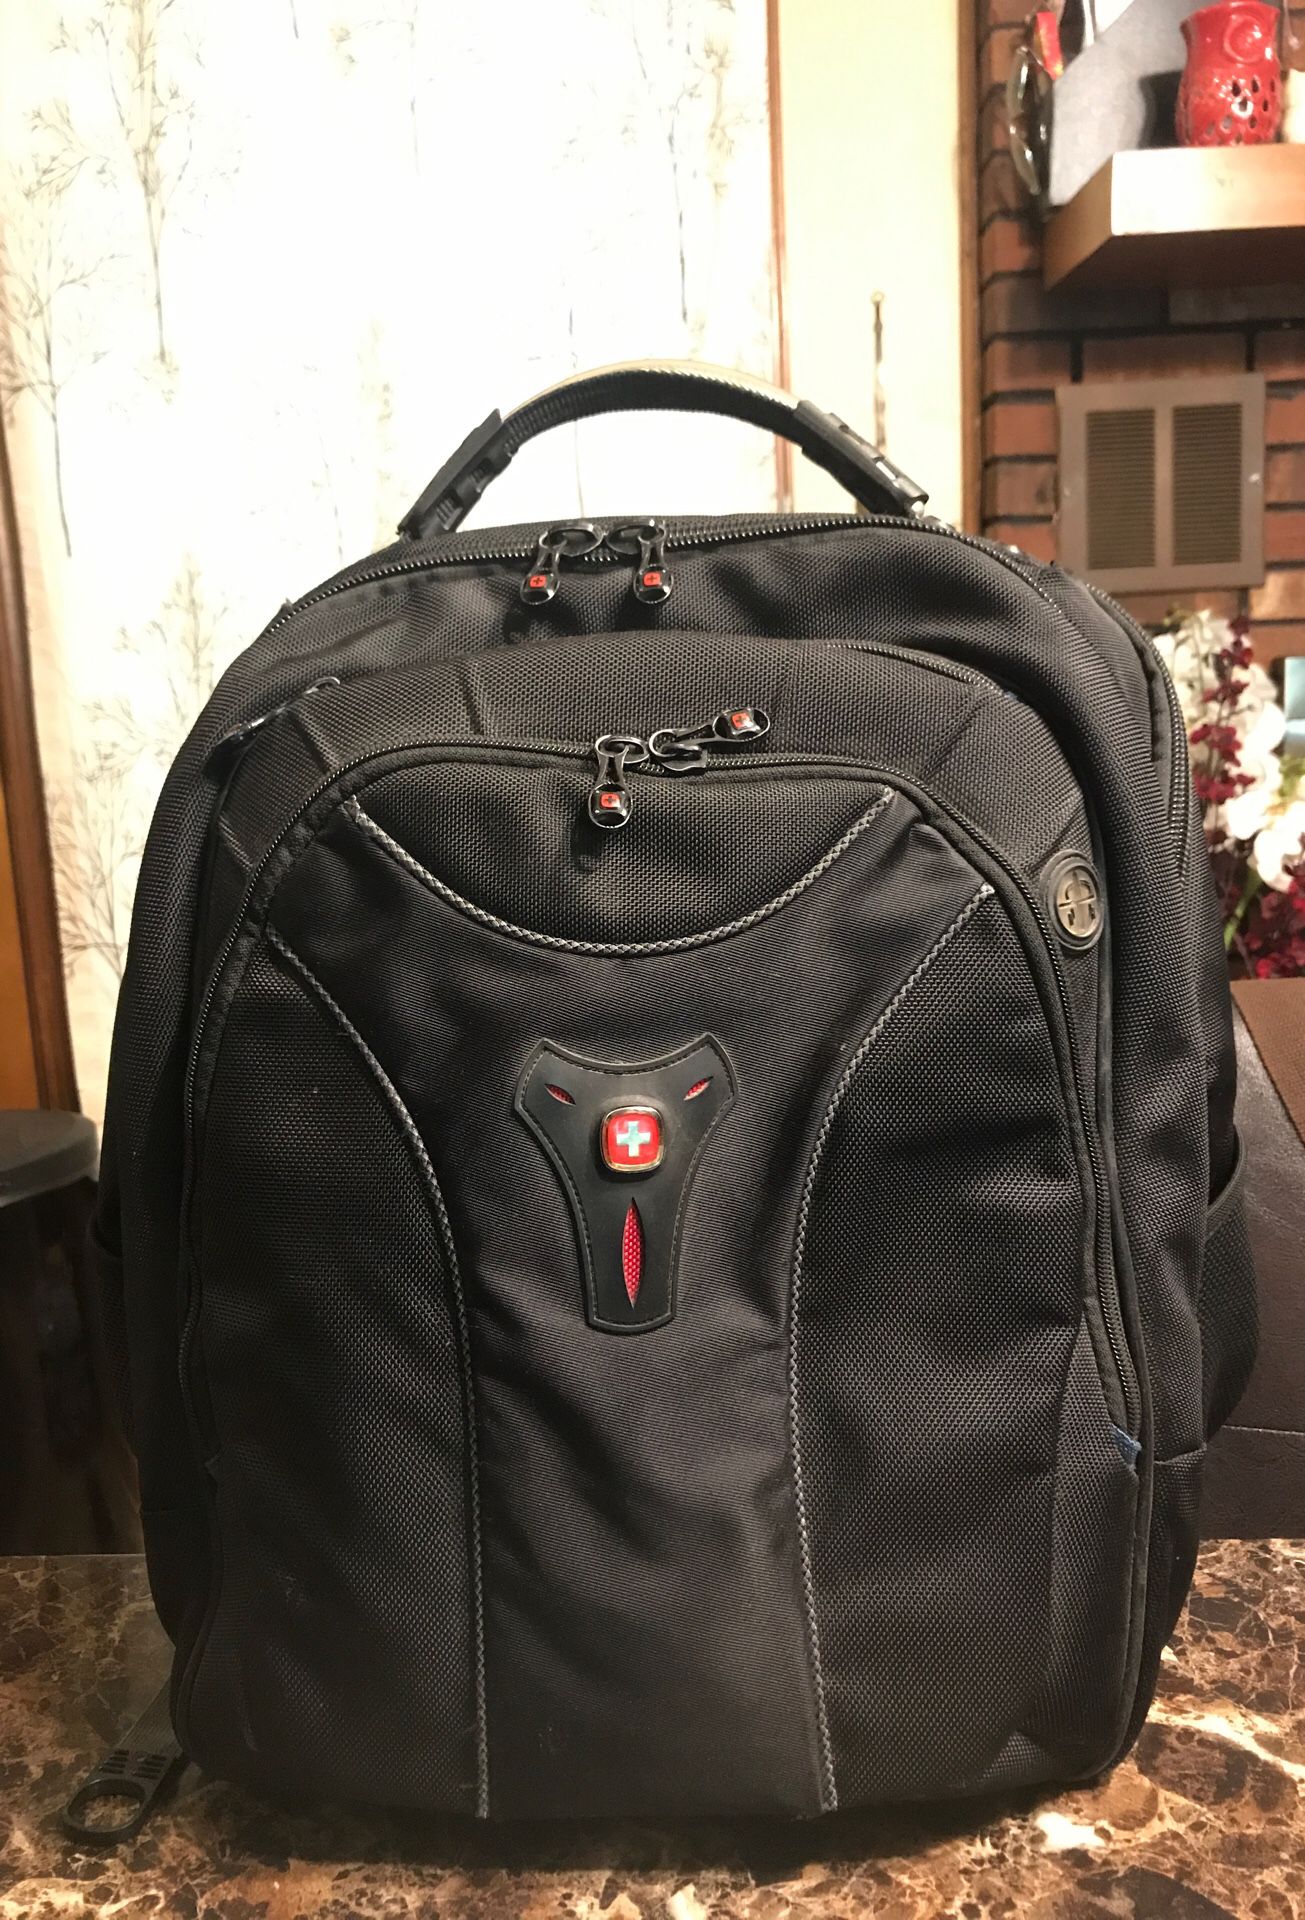 SwissGear laptop backpack